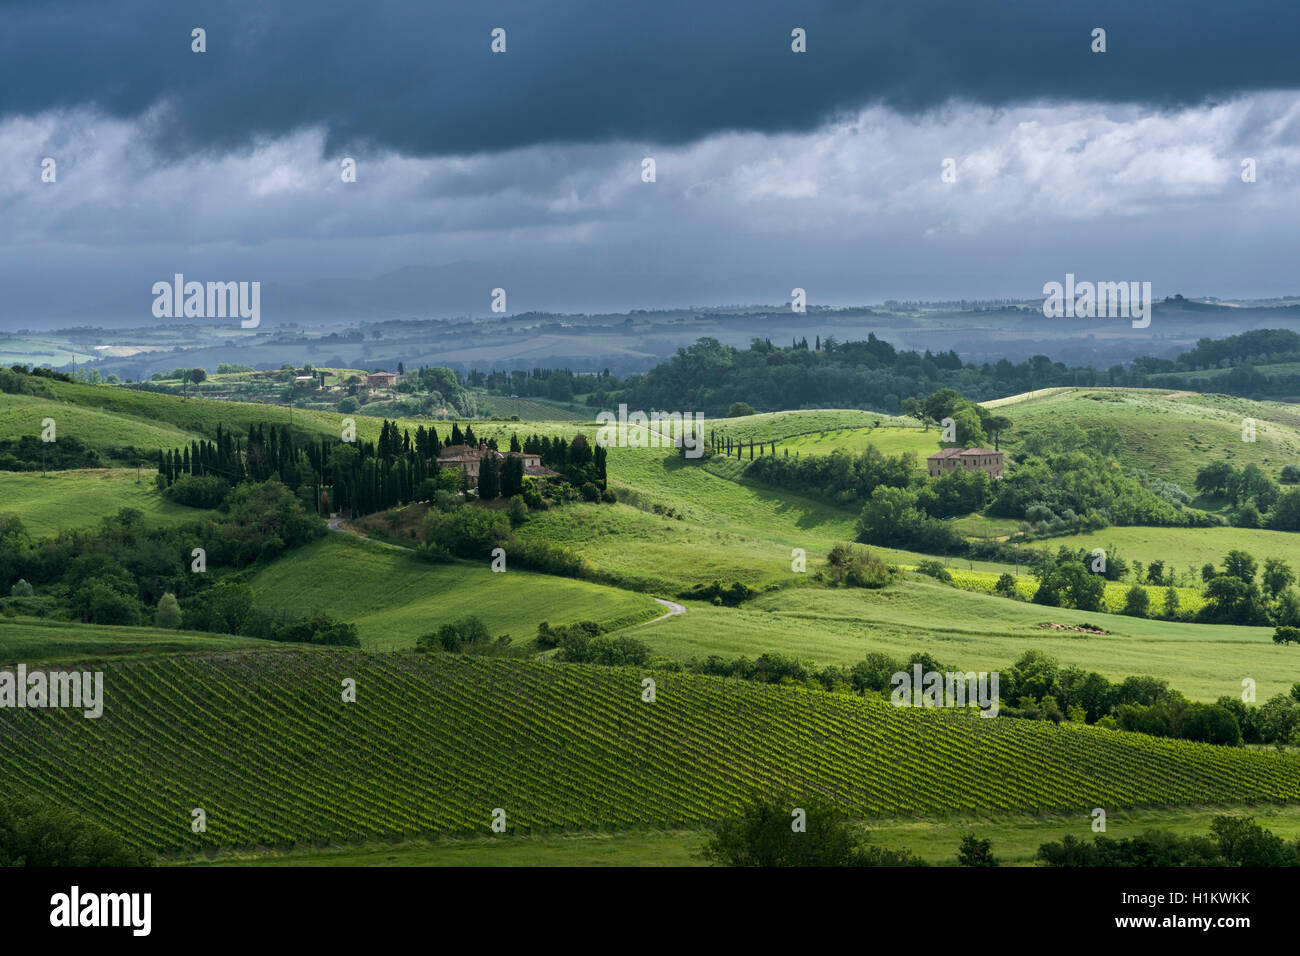 Typische Grün der toskanischen Landschaft im Val d'Orcia mit Hügeln, Betrieb, Felder, Bäume, Weinbergen, Olivenplantagen und bewölkter Himmel Stockfoto